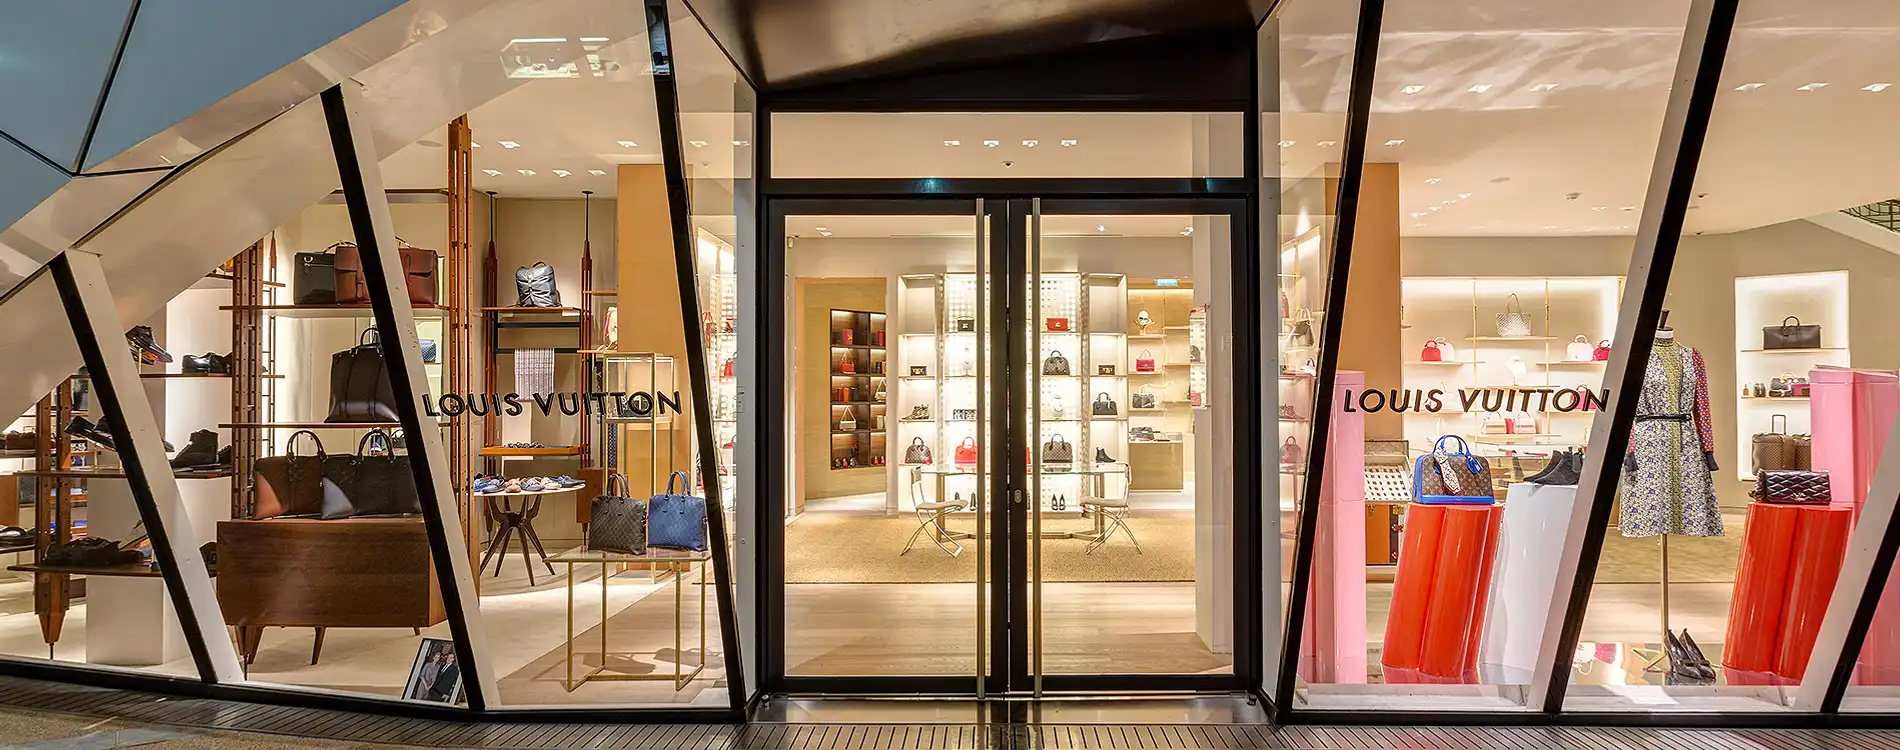 MONTE CARLO, MONACO - JUNE 18, 2022: Louis Vuitton Store in Monte